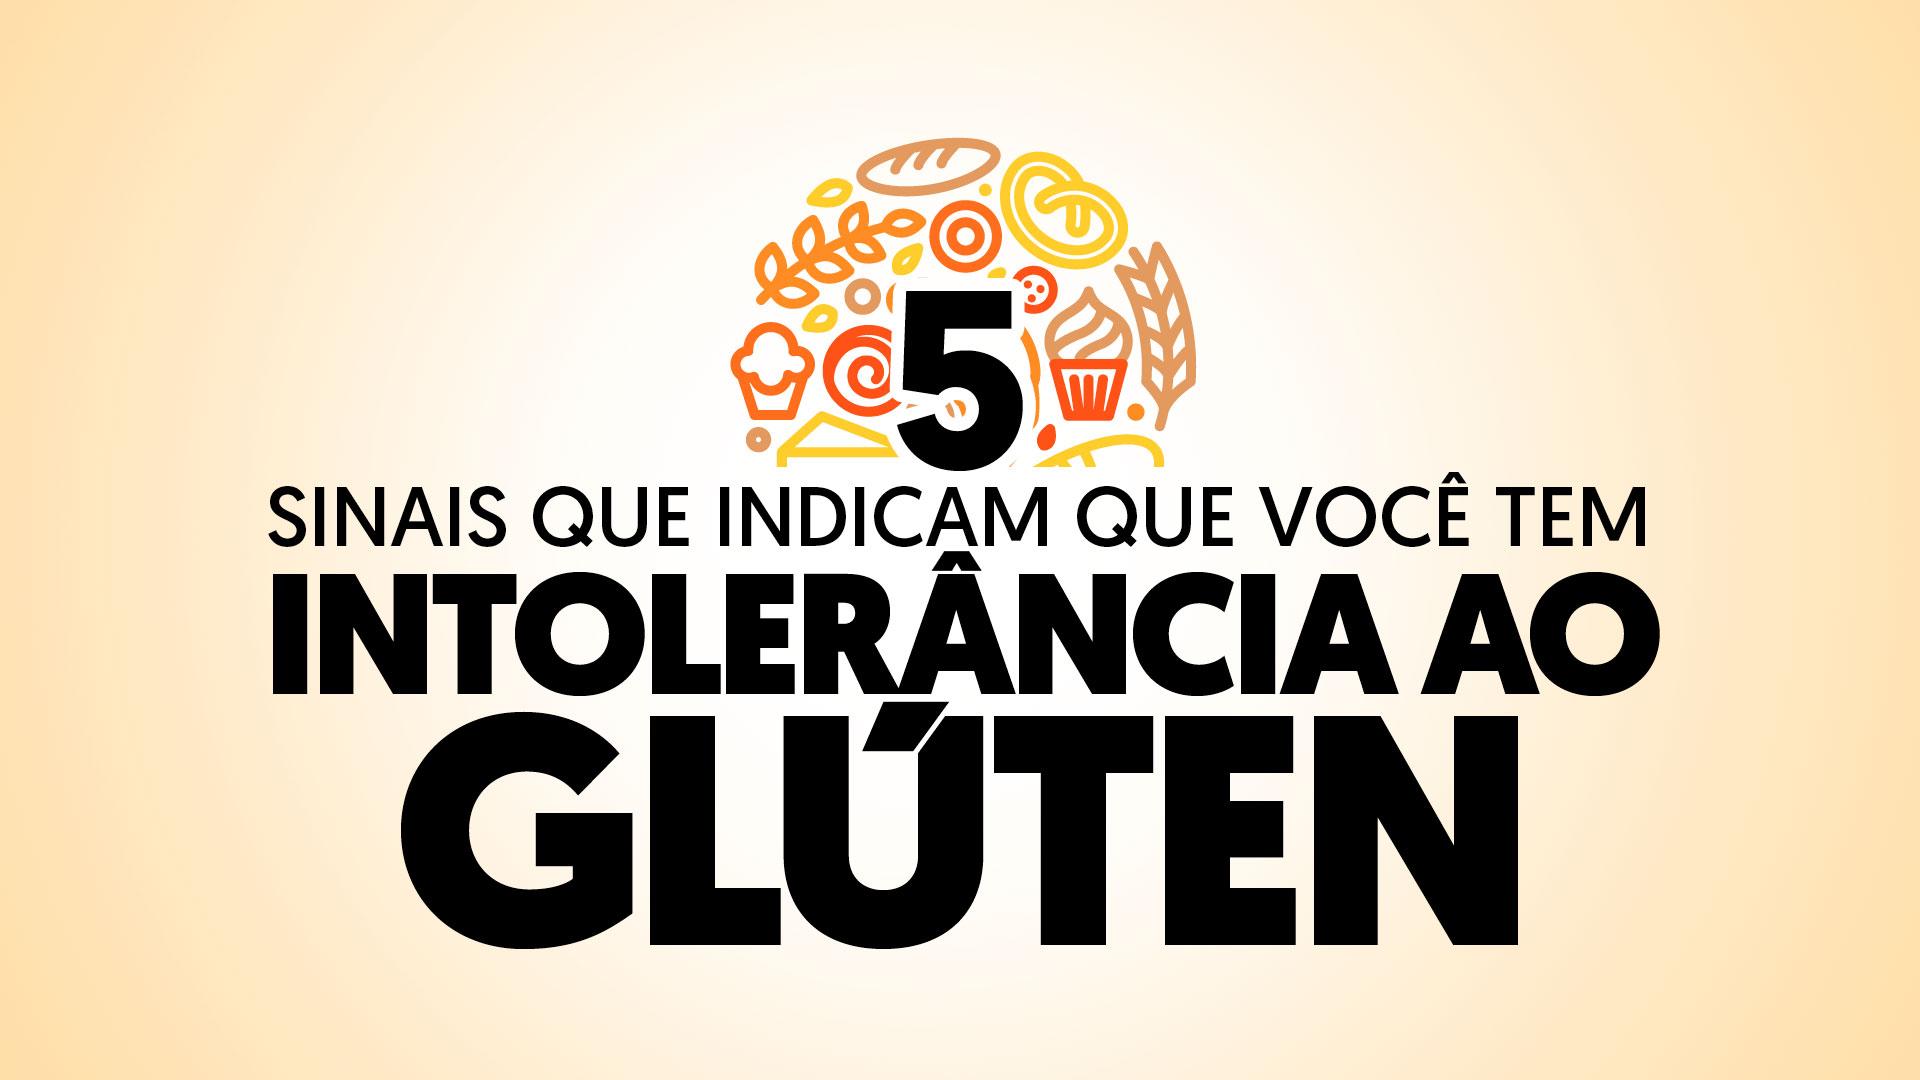 O glúten é encontrado em alimentos como pães e bolos, mas pode ser prejudicial para quem apresenta intolerância a ele, causando sintomas específicos.